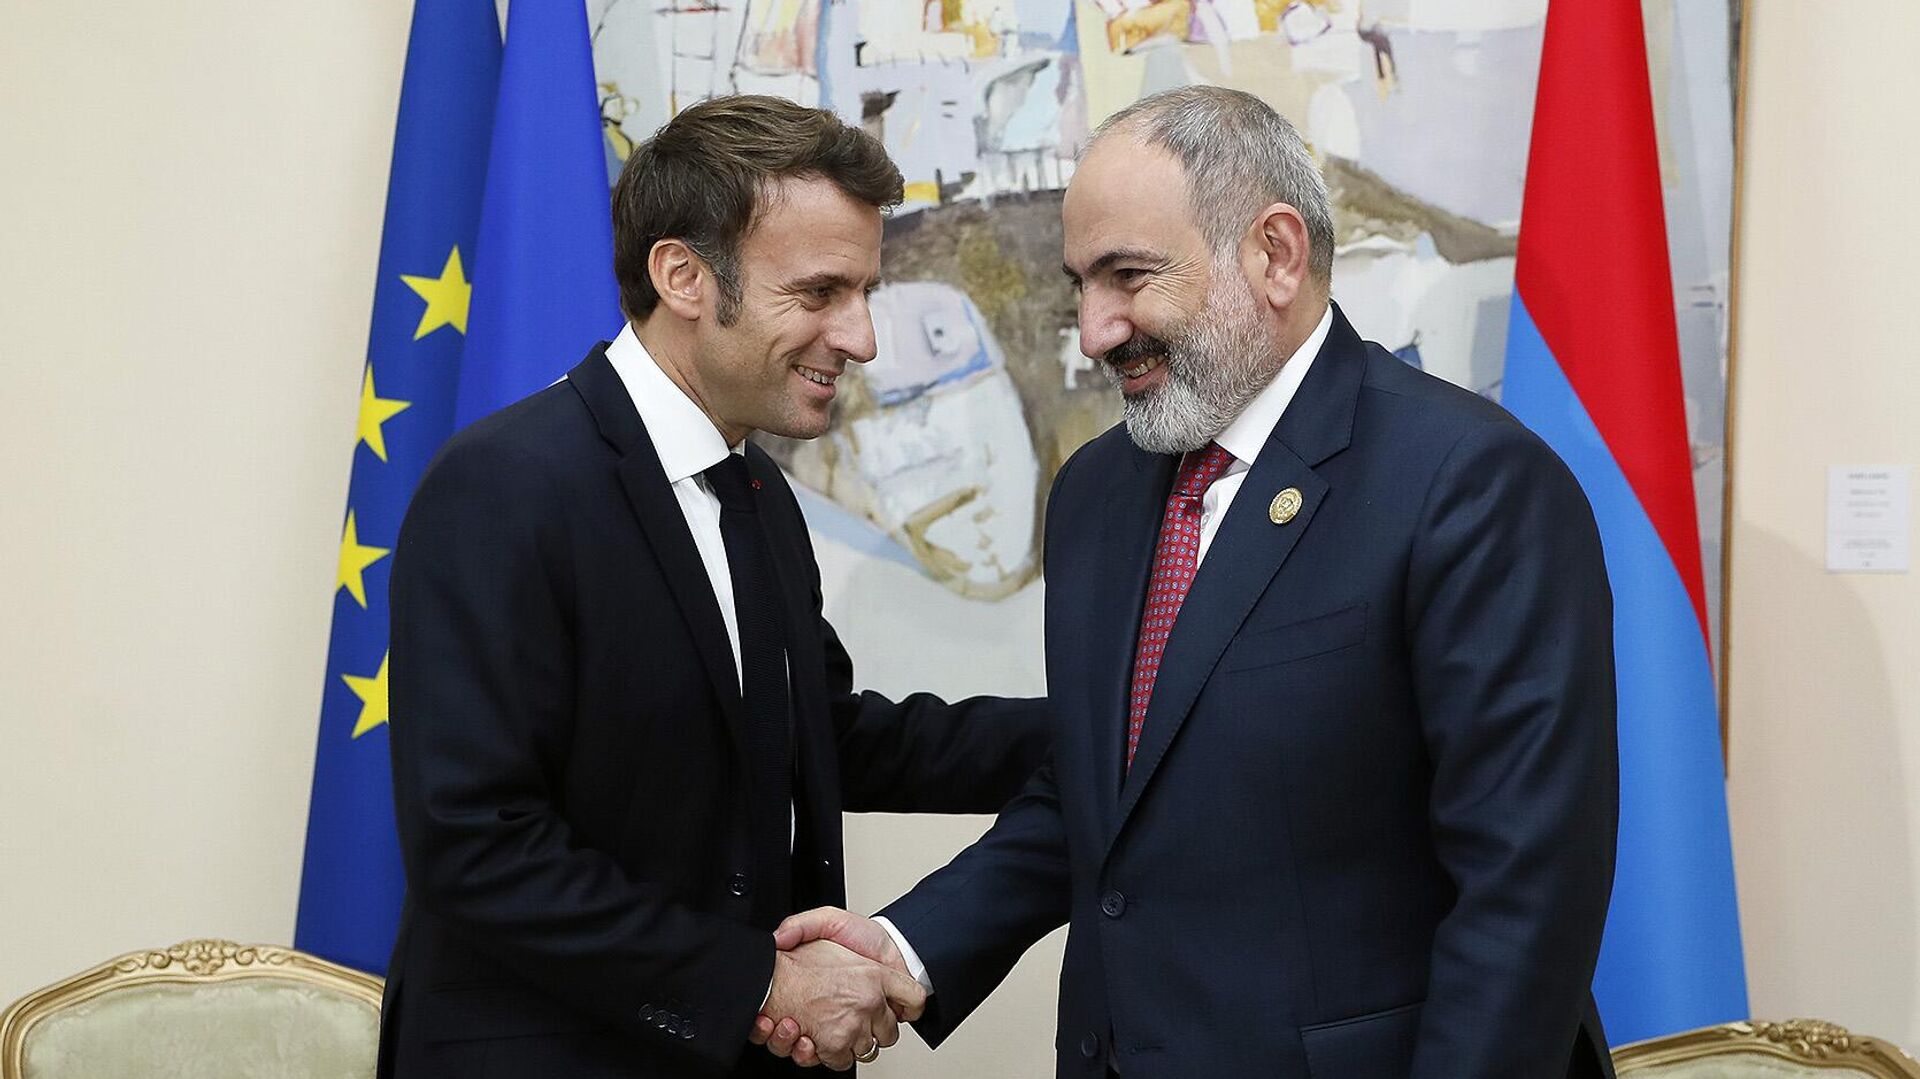 Пашинян поздравил Макрона с днем рождения: народ Армении разделяет ценности Франции 